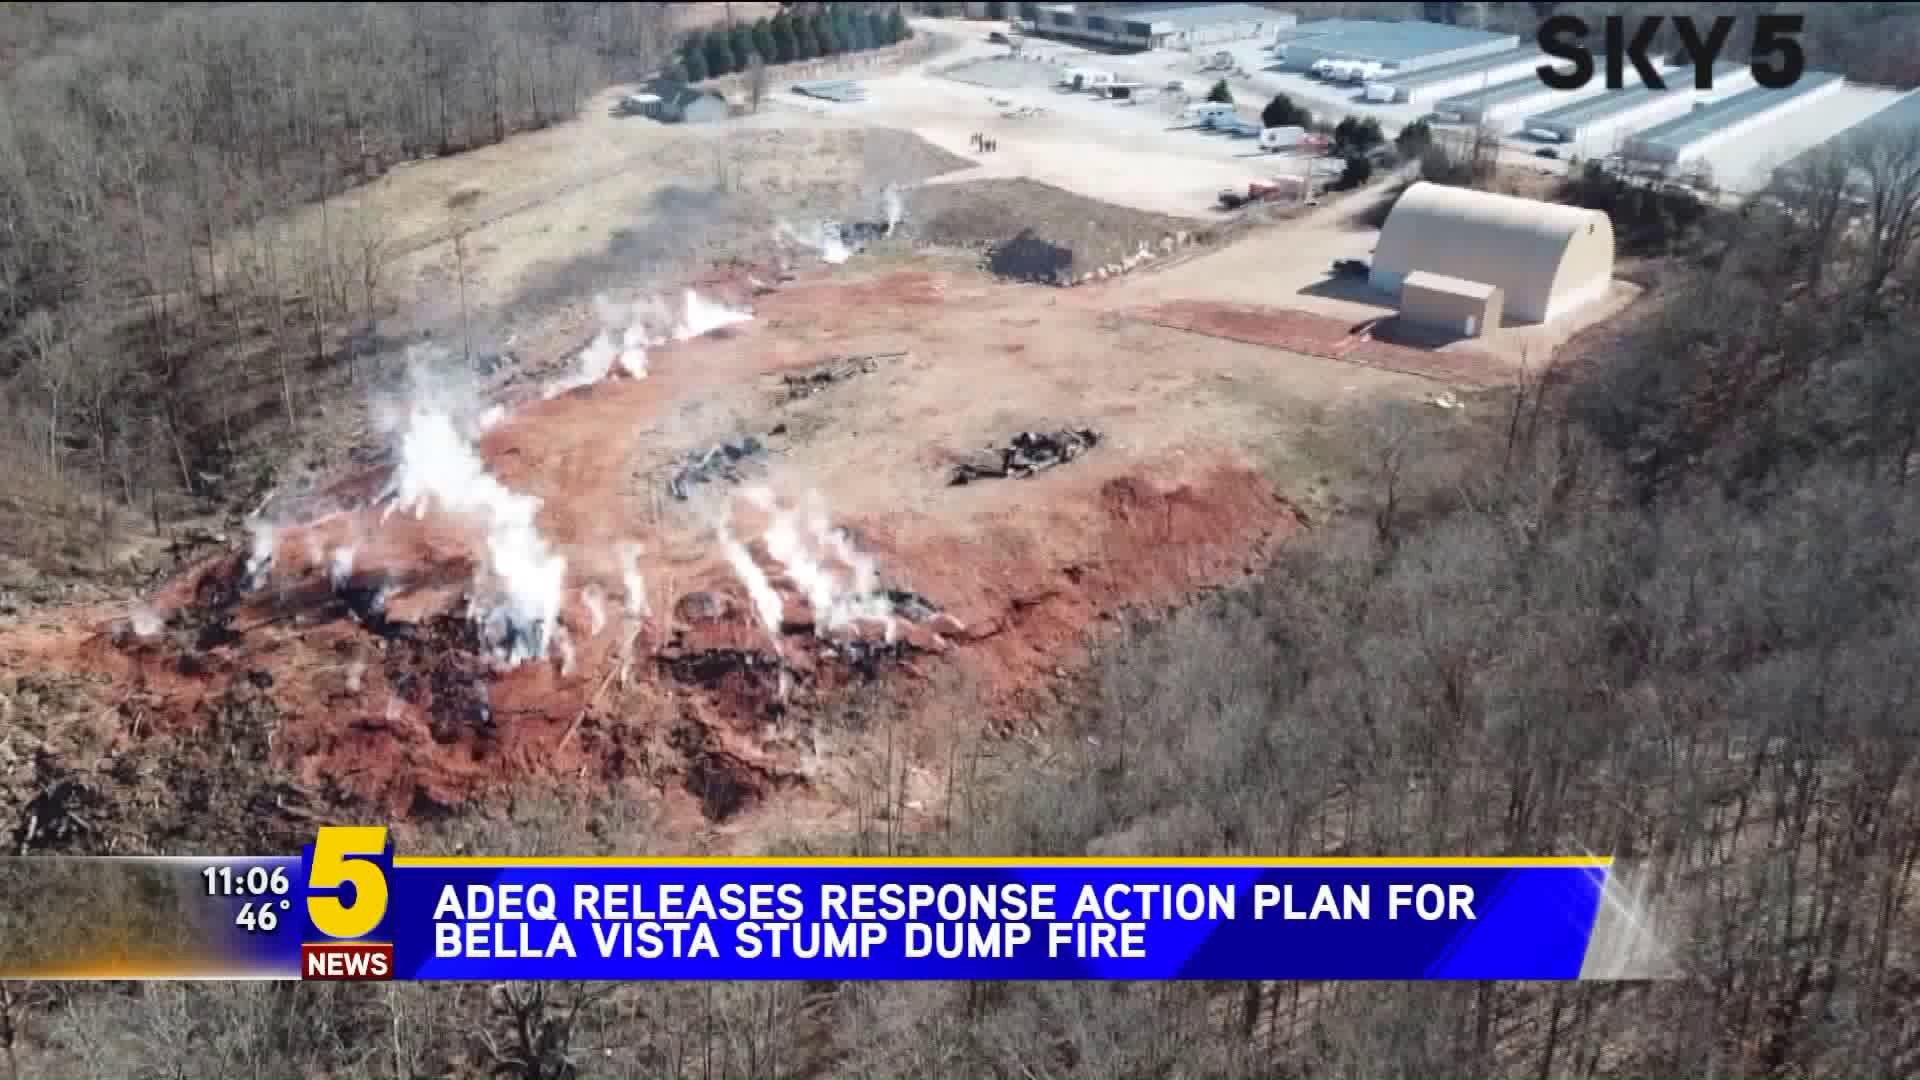 ADEQ Releases Response Action Plan For Stump Dump